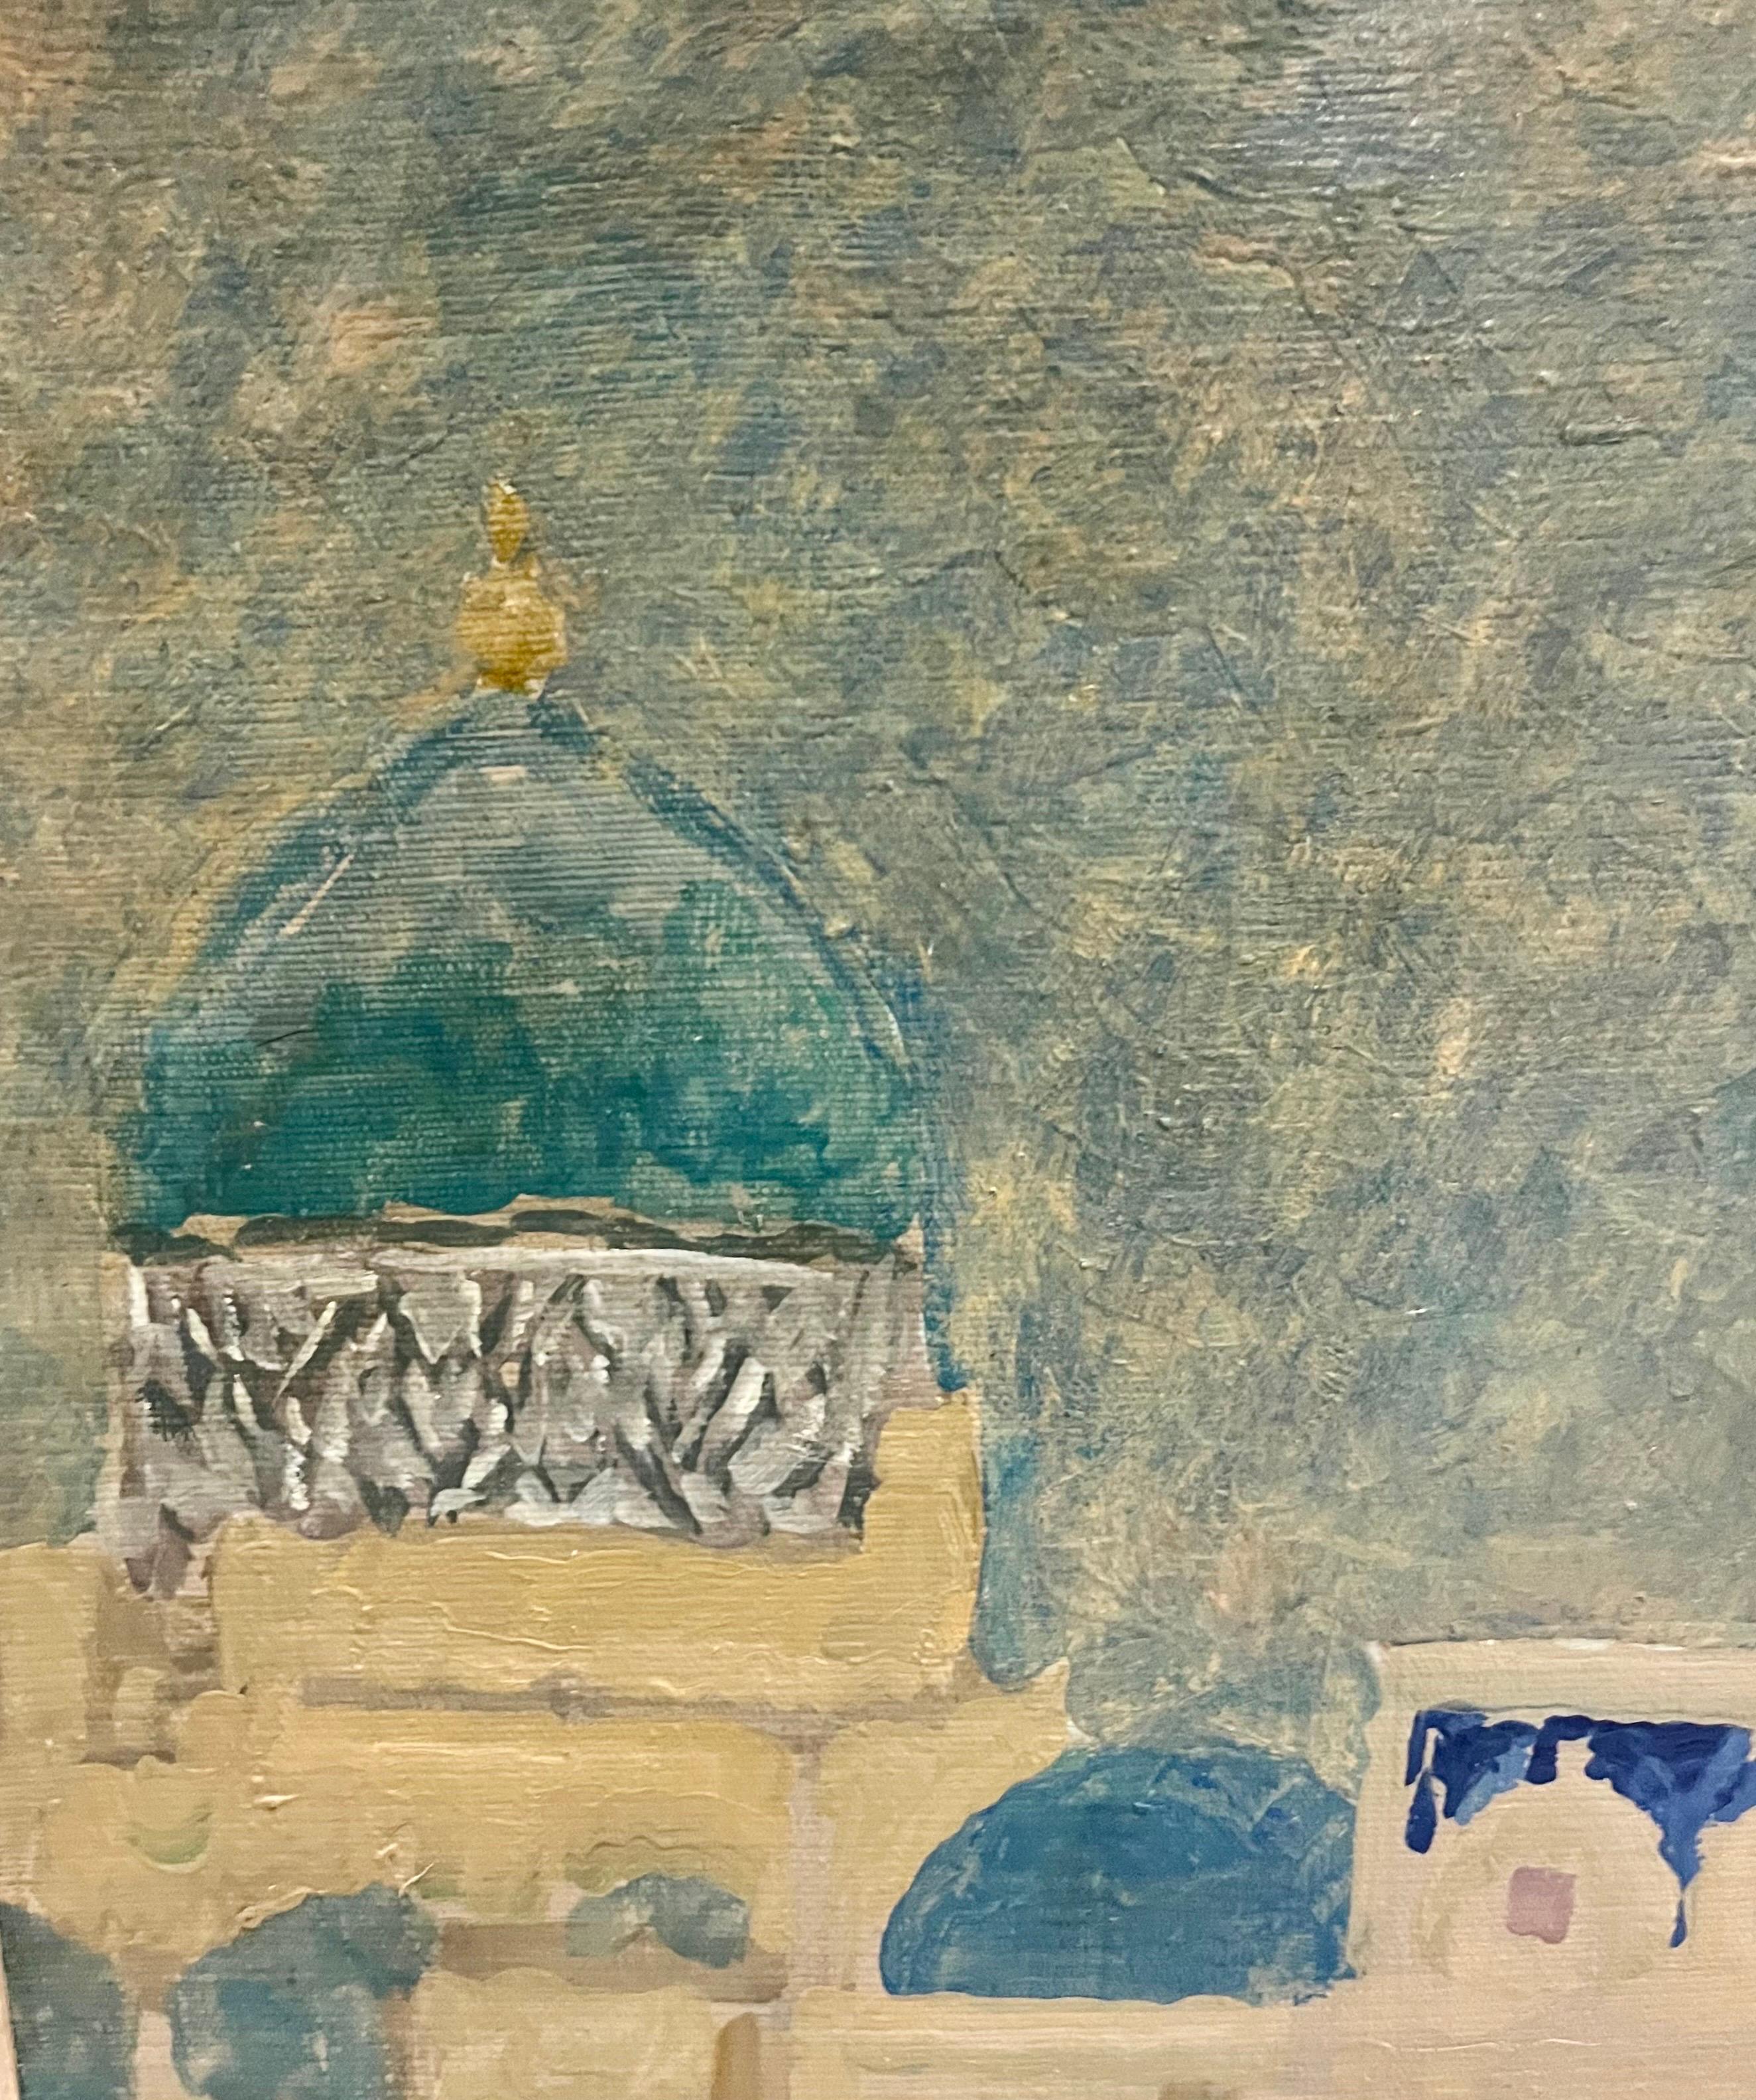 Paysage du Moyen-Orient, , Mosquées bleu et turquoise Ouzbékistan, Khiva
Dmitrij KOSMIN (Omsk, 1925 - Moscou, 2003)

Dmitrij Kosmin a représenté l'Union soviétique à la Biennale de Venise en 1966.
Les œuvres de Dmitrij Kosmin se trouvent dans